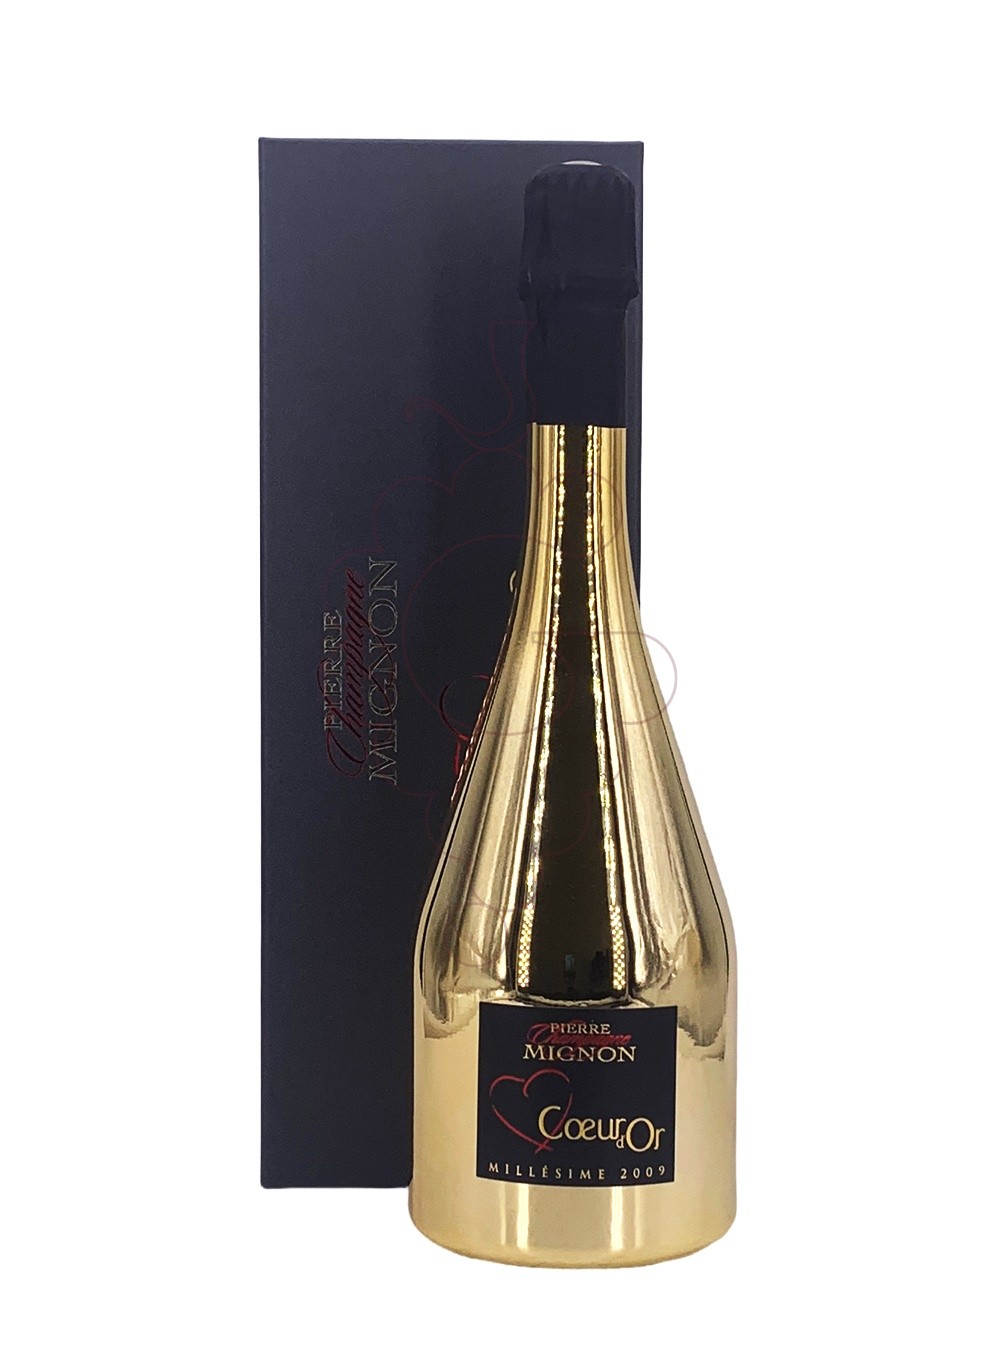 Foto Pierre Mignon Cuvée Coeur d'Or vino espumoso